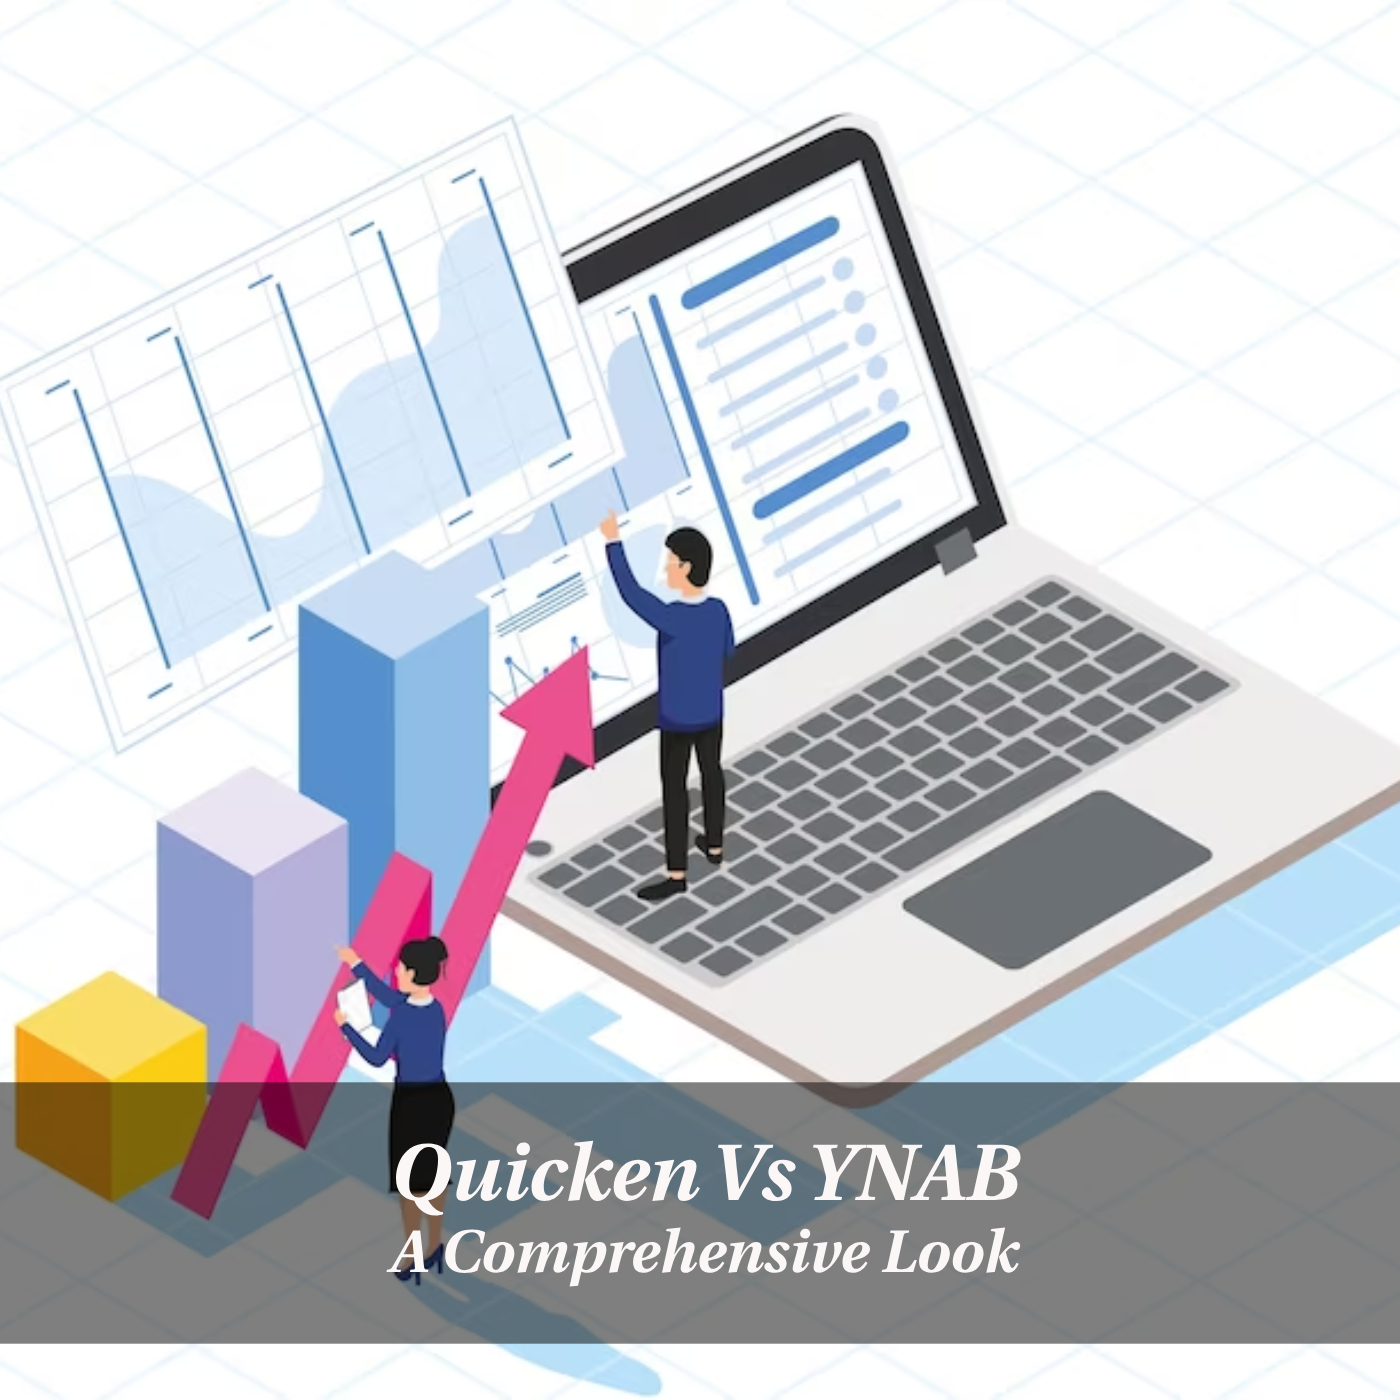 Comparing Quicken Vs YNAB: A Comprehensive Look